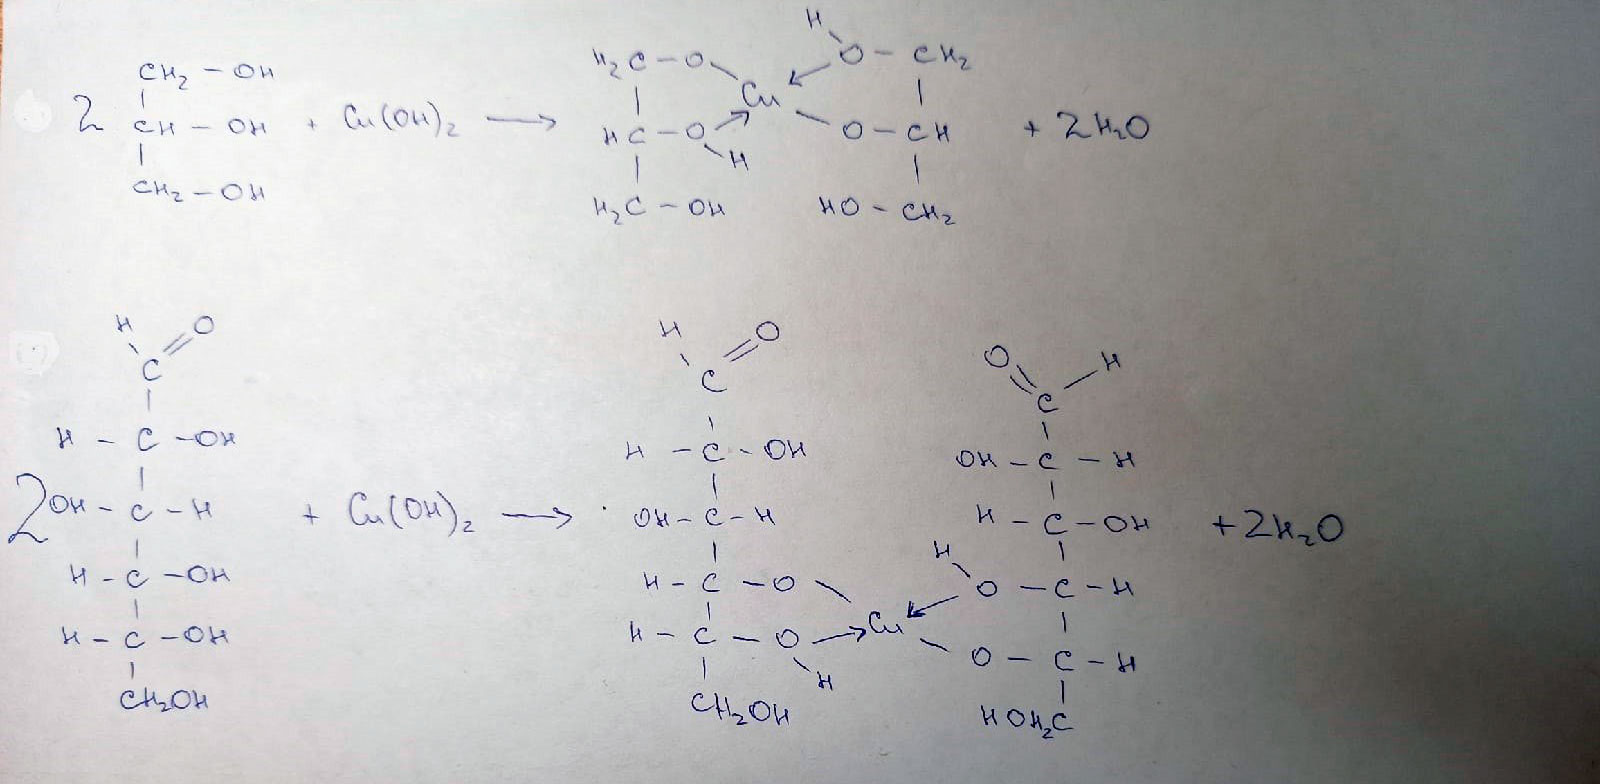 Метаналь гидроксид меди ii. Глицерин и оксид меди. Формальдегид и гидроксид меди 2. Глицерин и гидроксид меди 2. Глицерин и оксид меди 2.